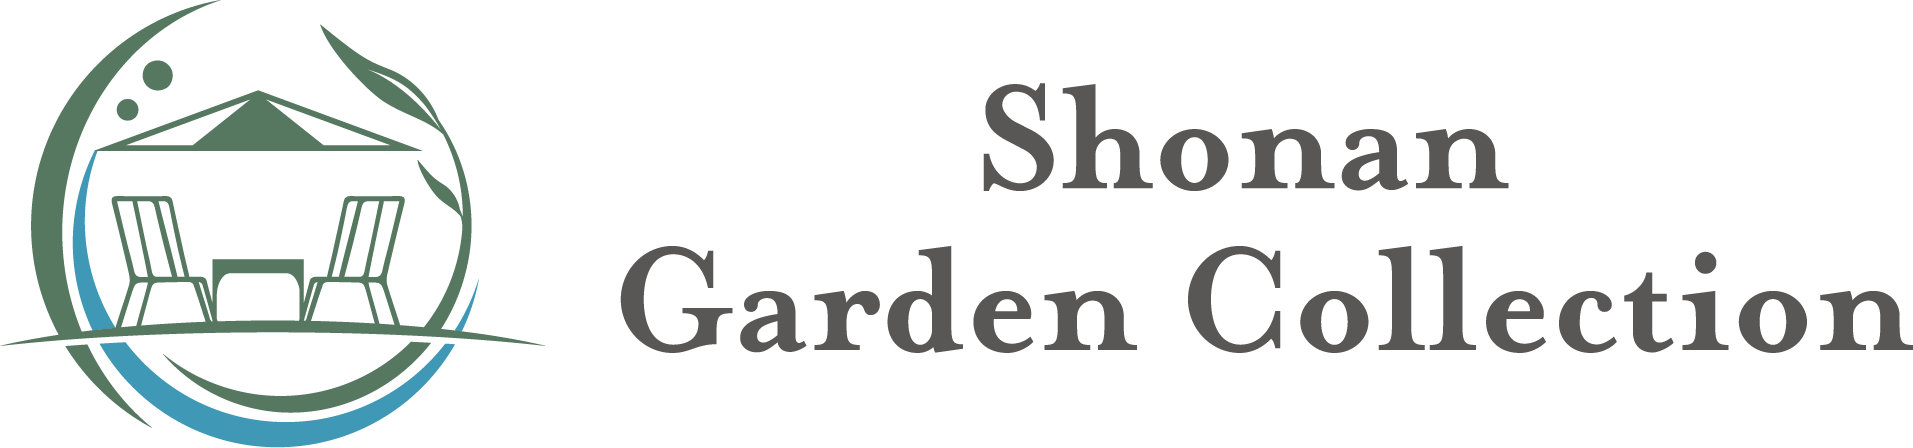 Shonan Garden Collection